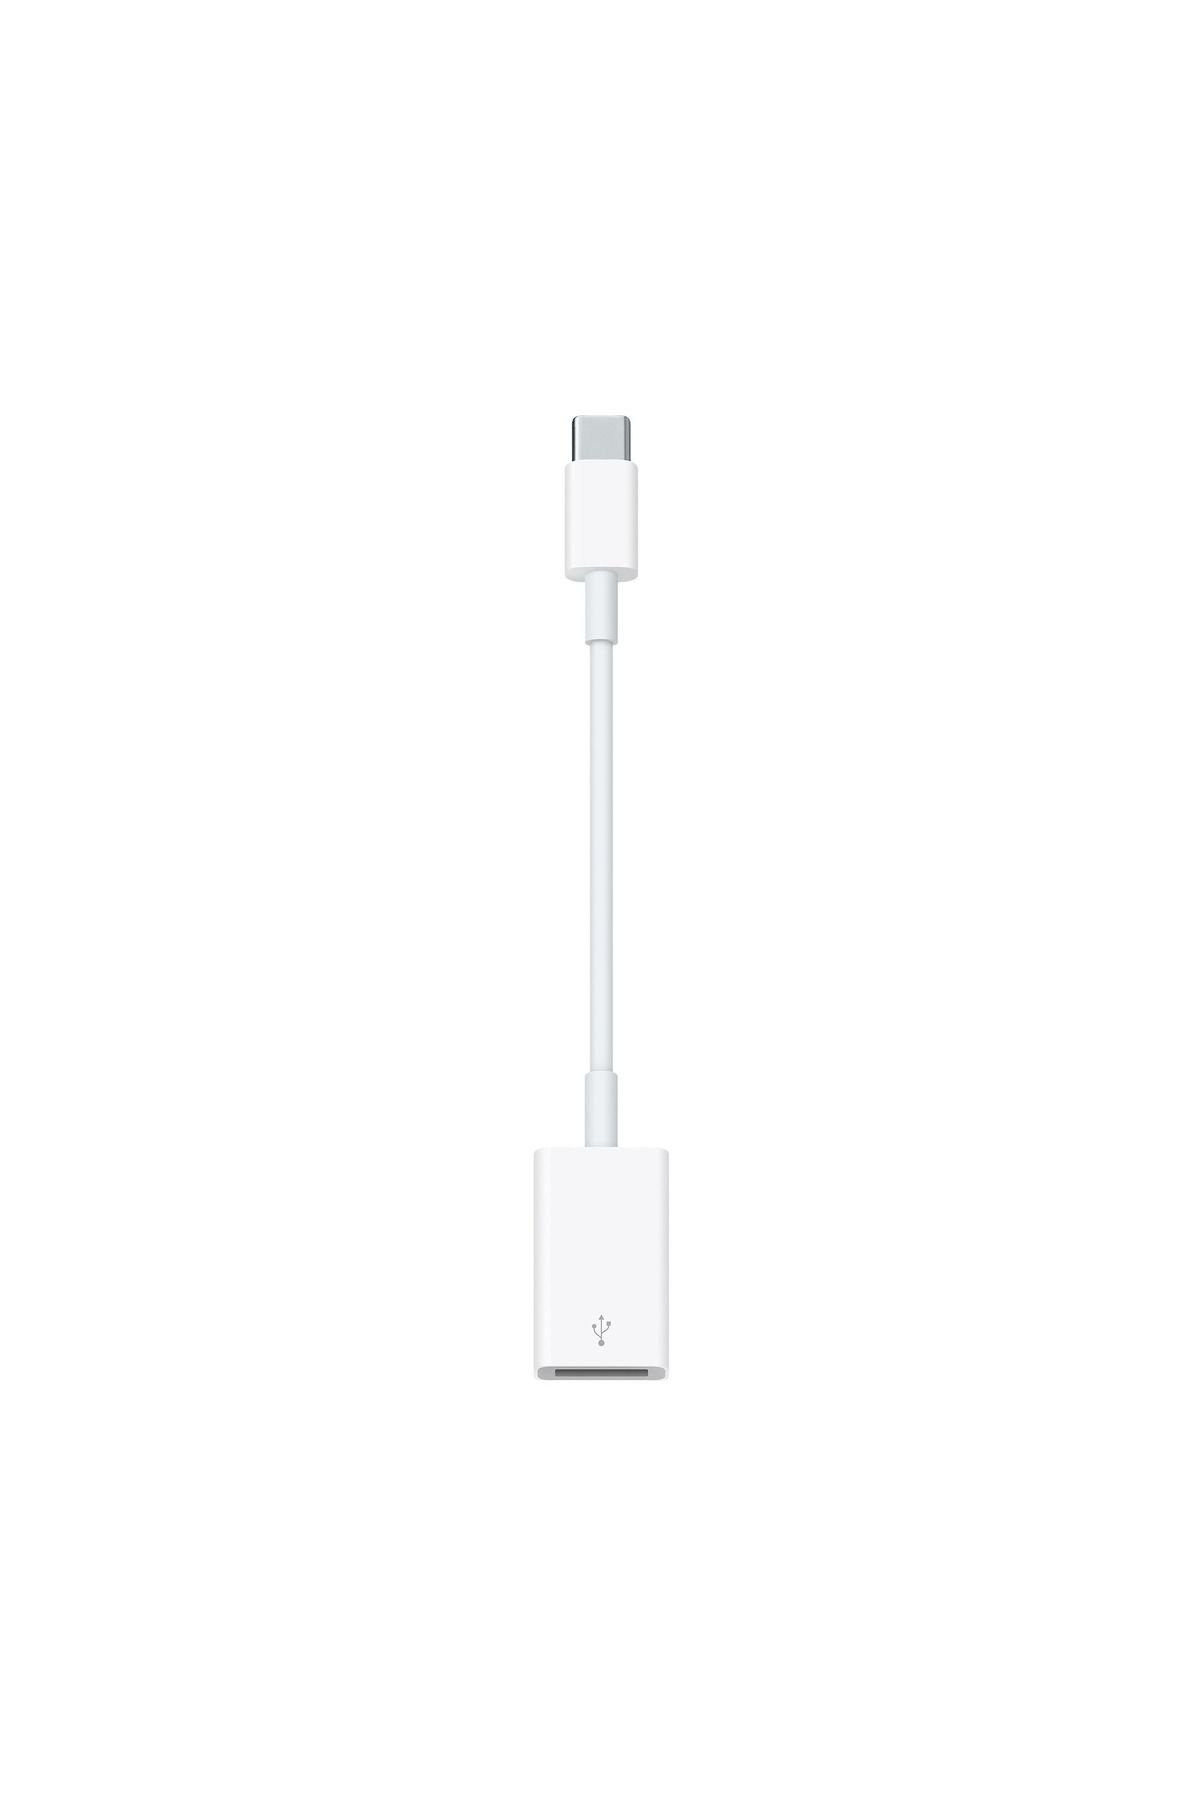 Apple USB-C USB Adaptör - MJ1M2ZM/A